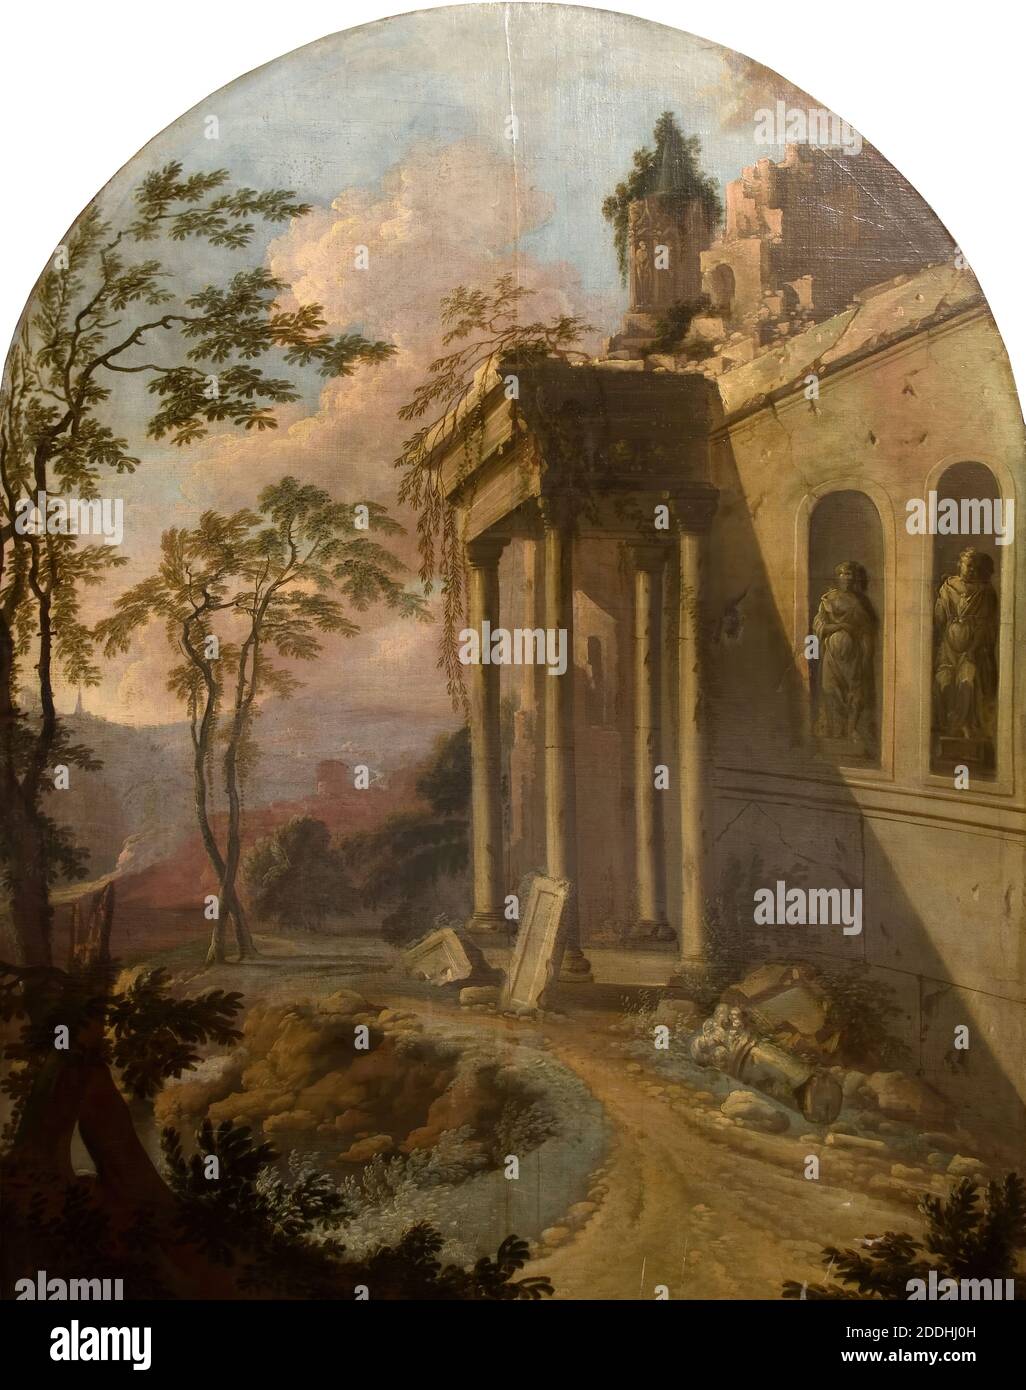 Paysage à la ruine, 1725 de l'école de Jacques Rousseau, Paysage, peinture à l'huile, ruines, ancien Maître, topographique Banque D'Images